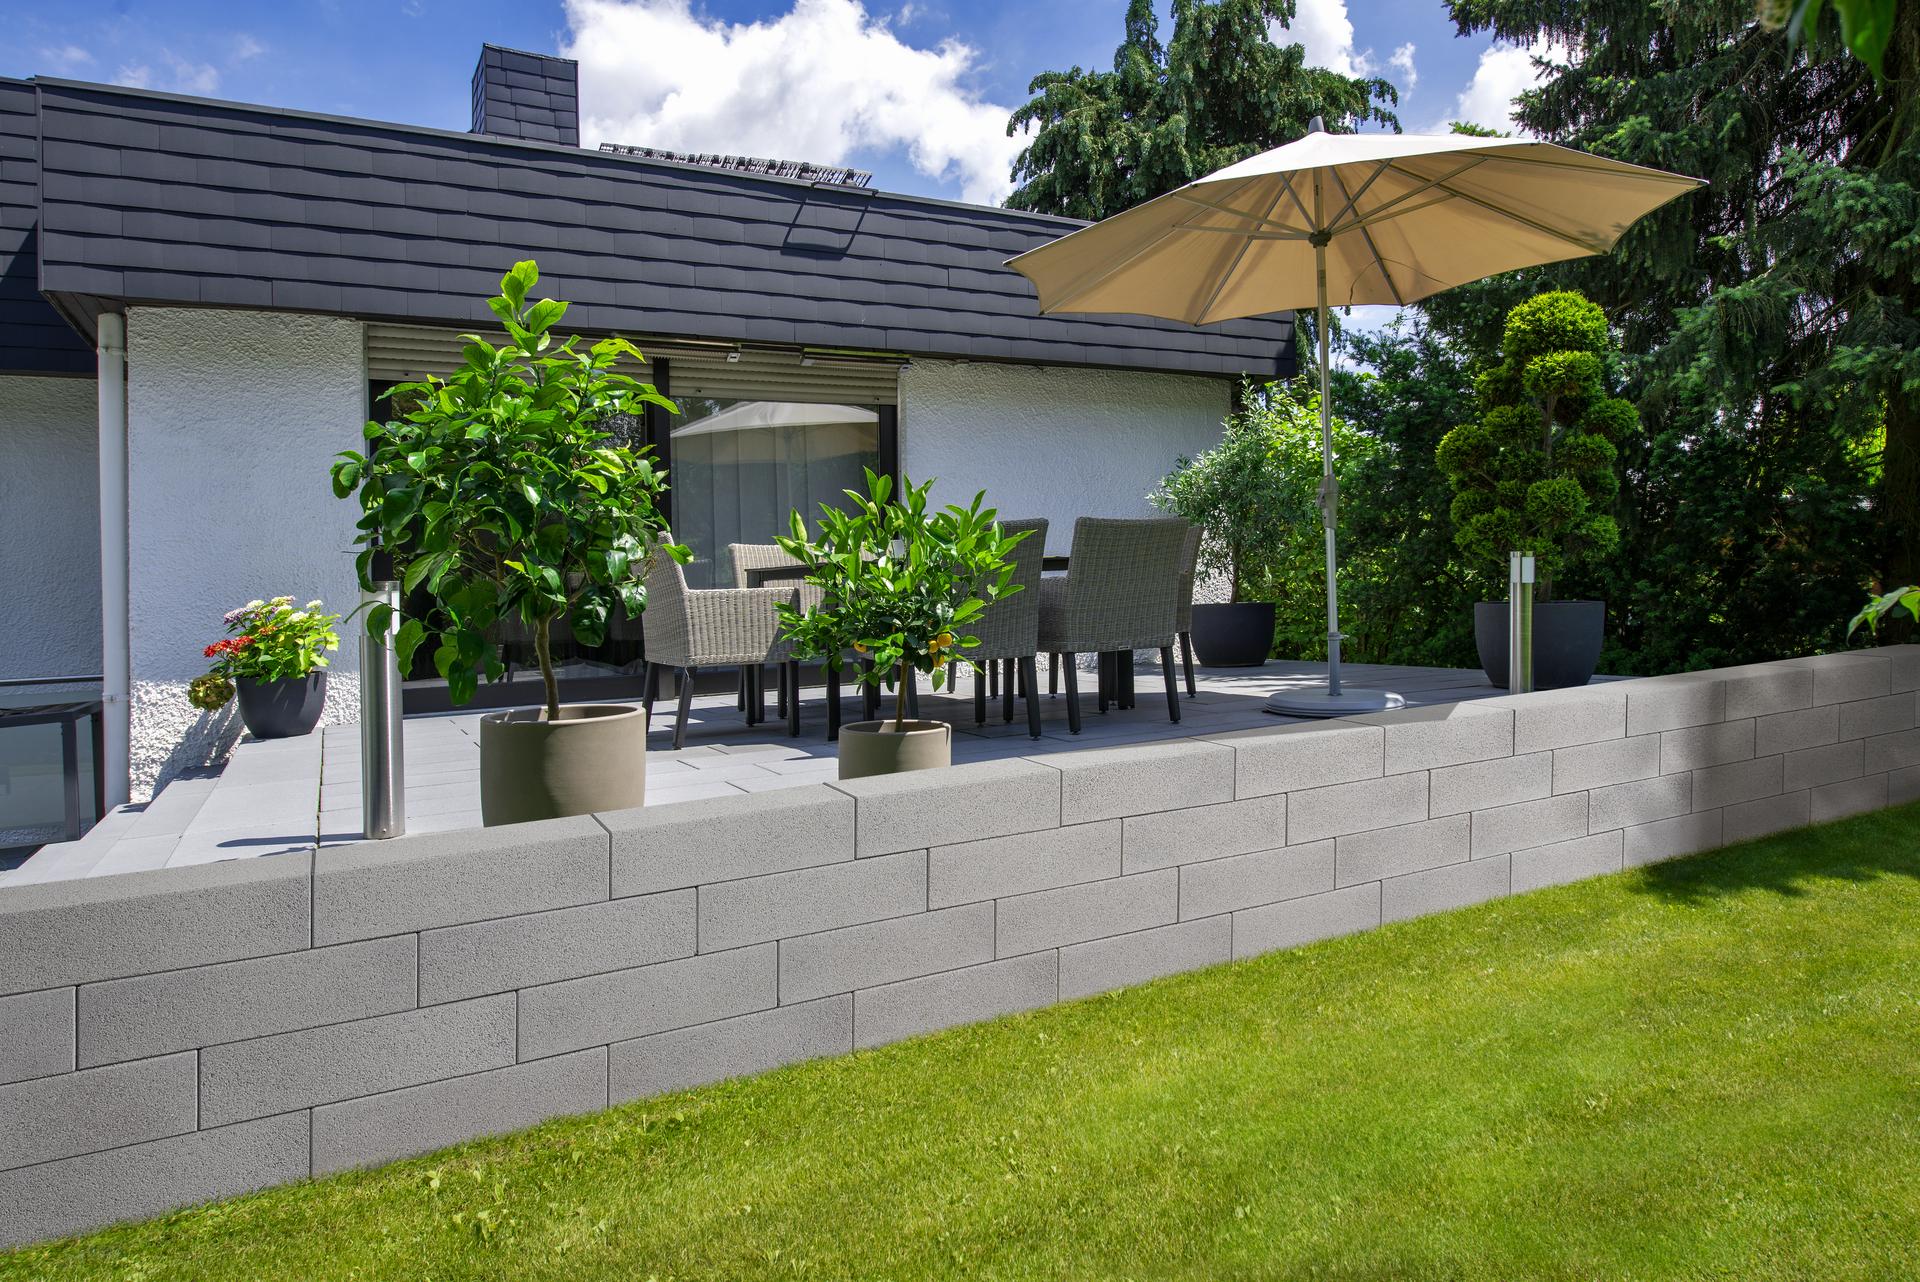 Terrasse mit Gartenmauer in grau